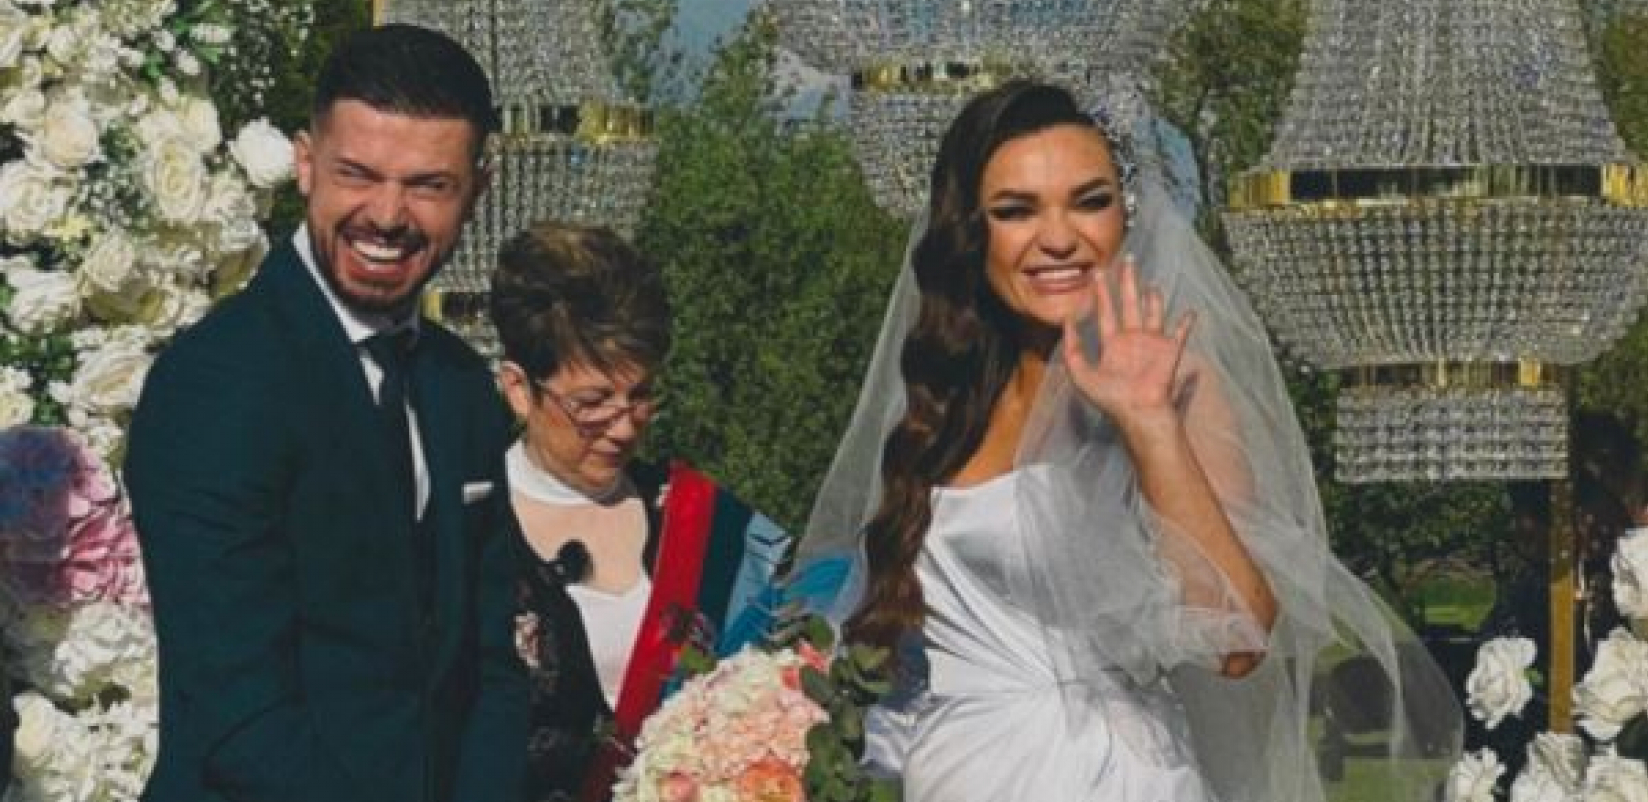 ŠIROKO Tamara i Darko na venčanje pukli 30.000 evra